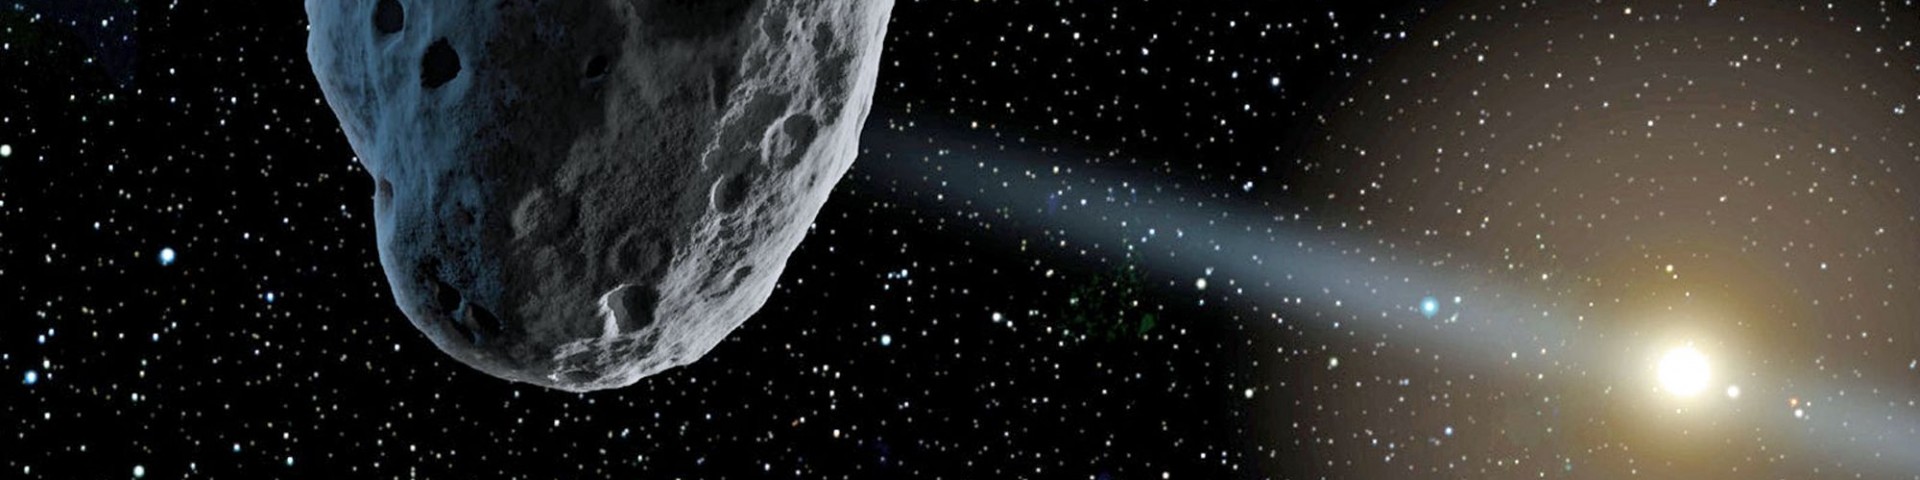 Asteroide del 29 aprile: come vedere il passaggio in diretta streaming